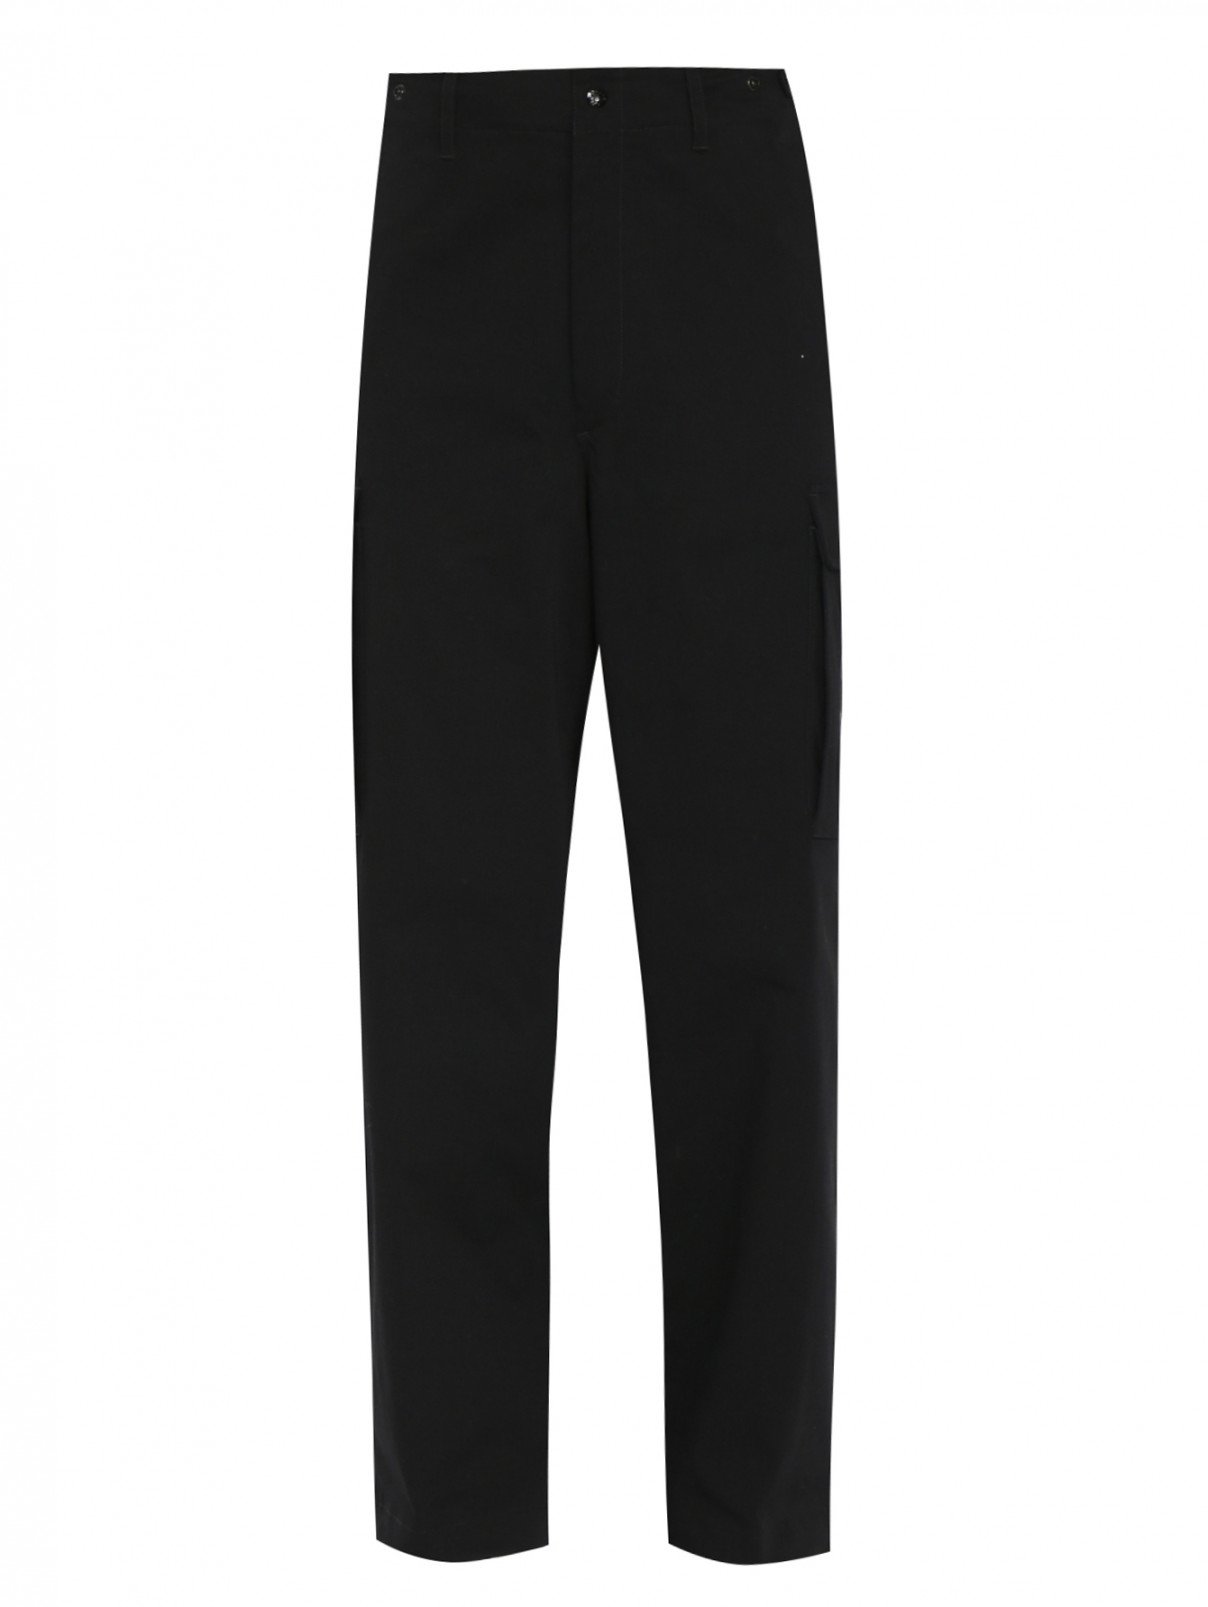 Трикотажные брюки из хлопка с накладными карманами Moncler  –  Общий вид  – Цвет:  Черный